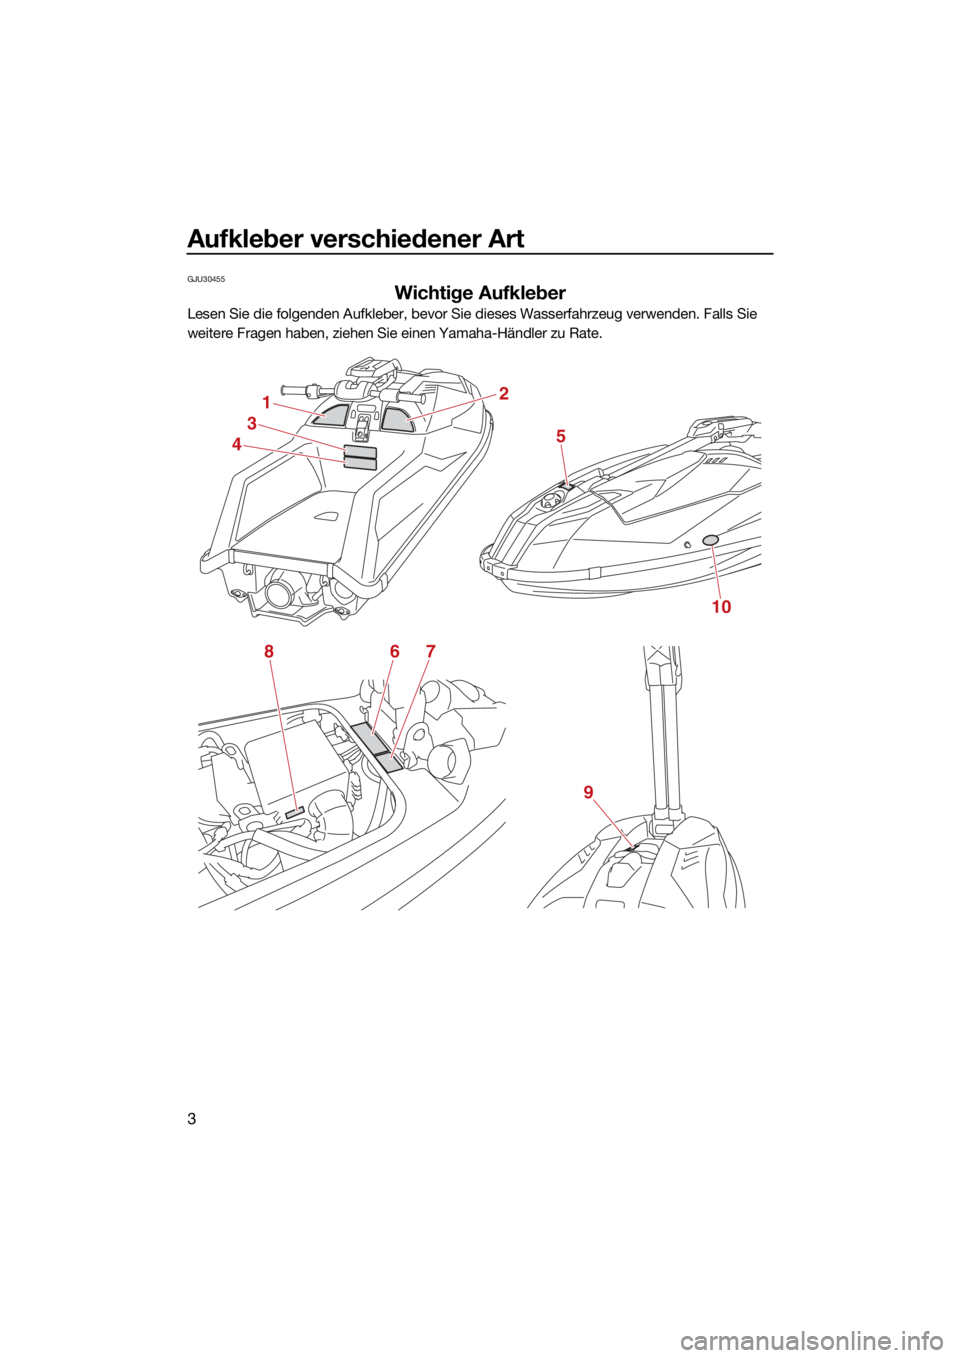 YAMAHA SUPERJET 2022  Betriebsanleitungen (in German) Aufkleber verschiedener Art
3
GJU30455
Wichtige Aufkleber
Lesen Sie die folgenden Aufkleber, bevor Sie dieses Wasserfahrzeug verwenden. Falls Sie 
weitere Fragen haben, ziehen Sie einen Yamaha-Händle